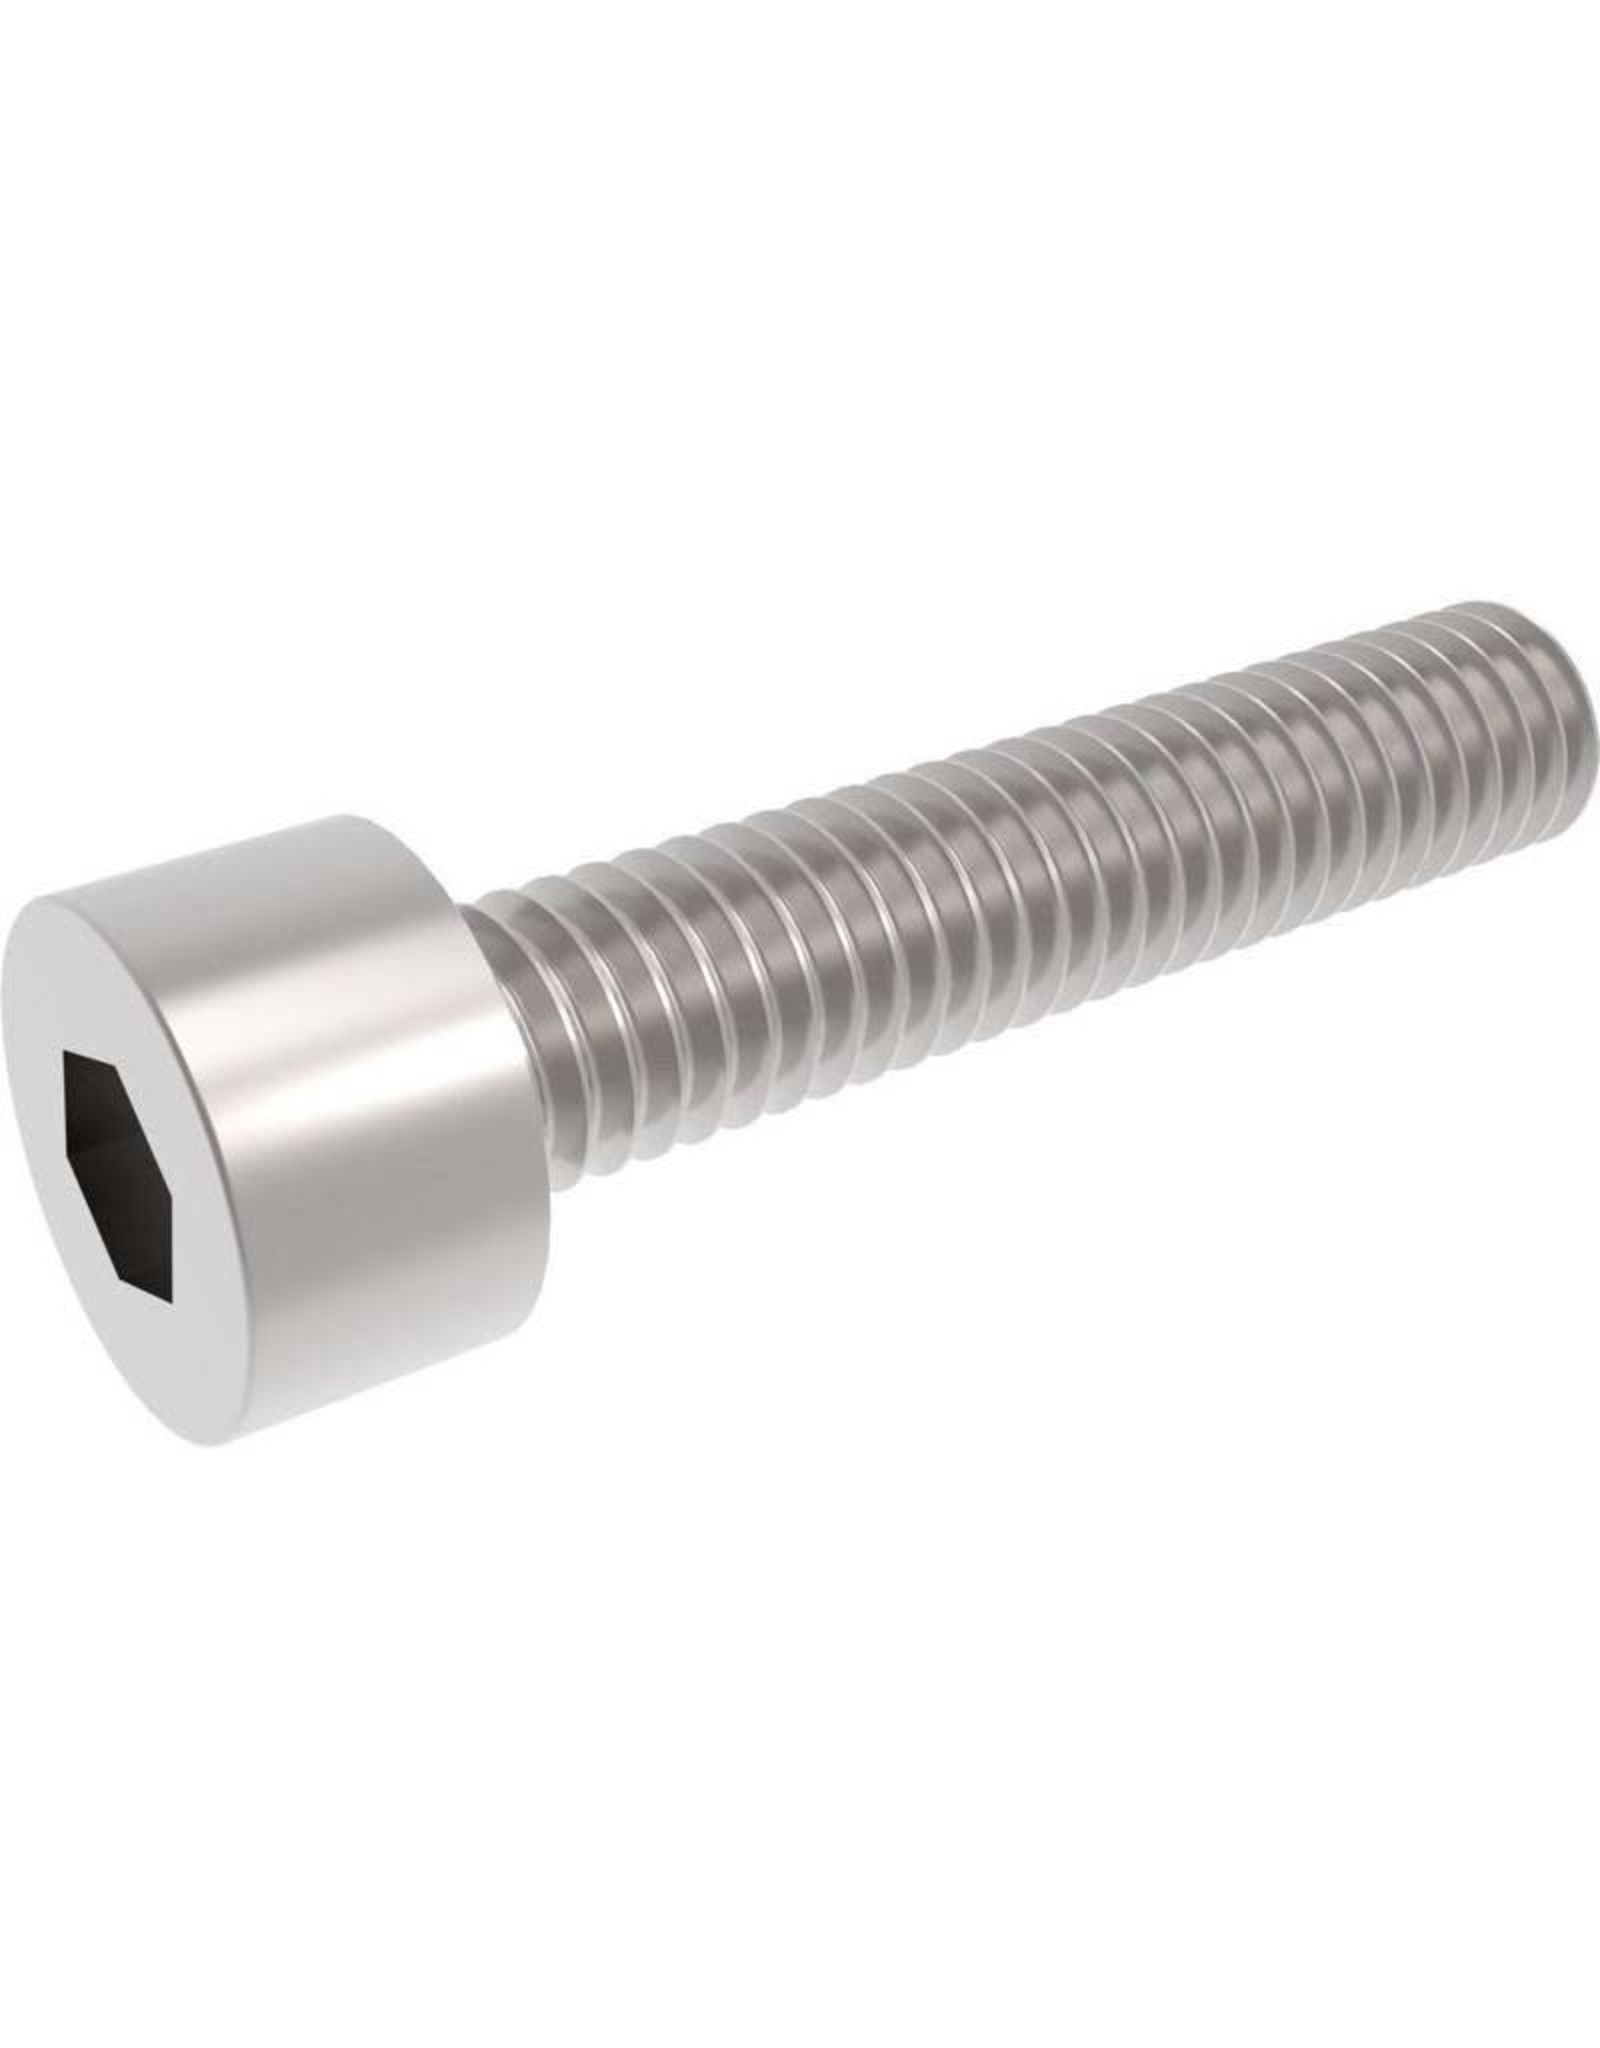 Steel socket screw 1/4-20 3/8" Long (pack of 2)